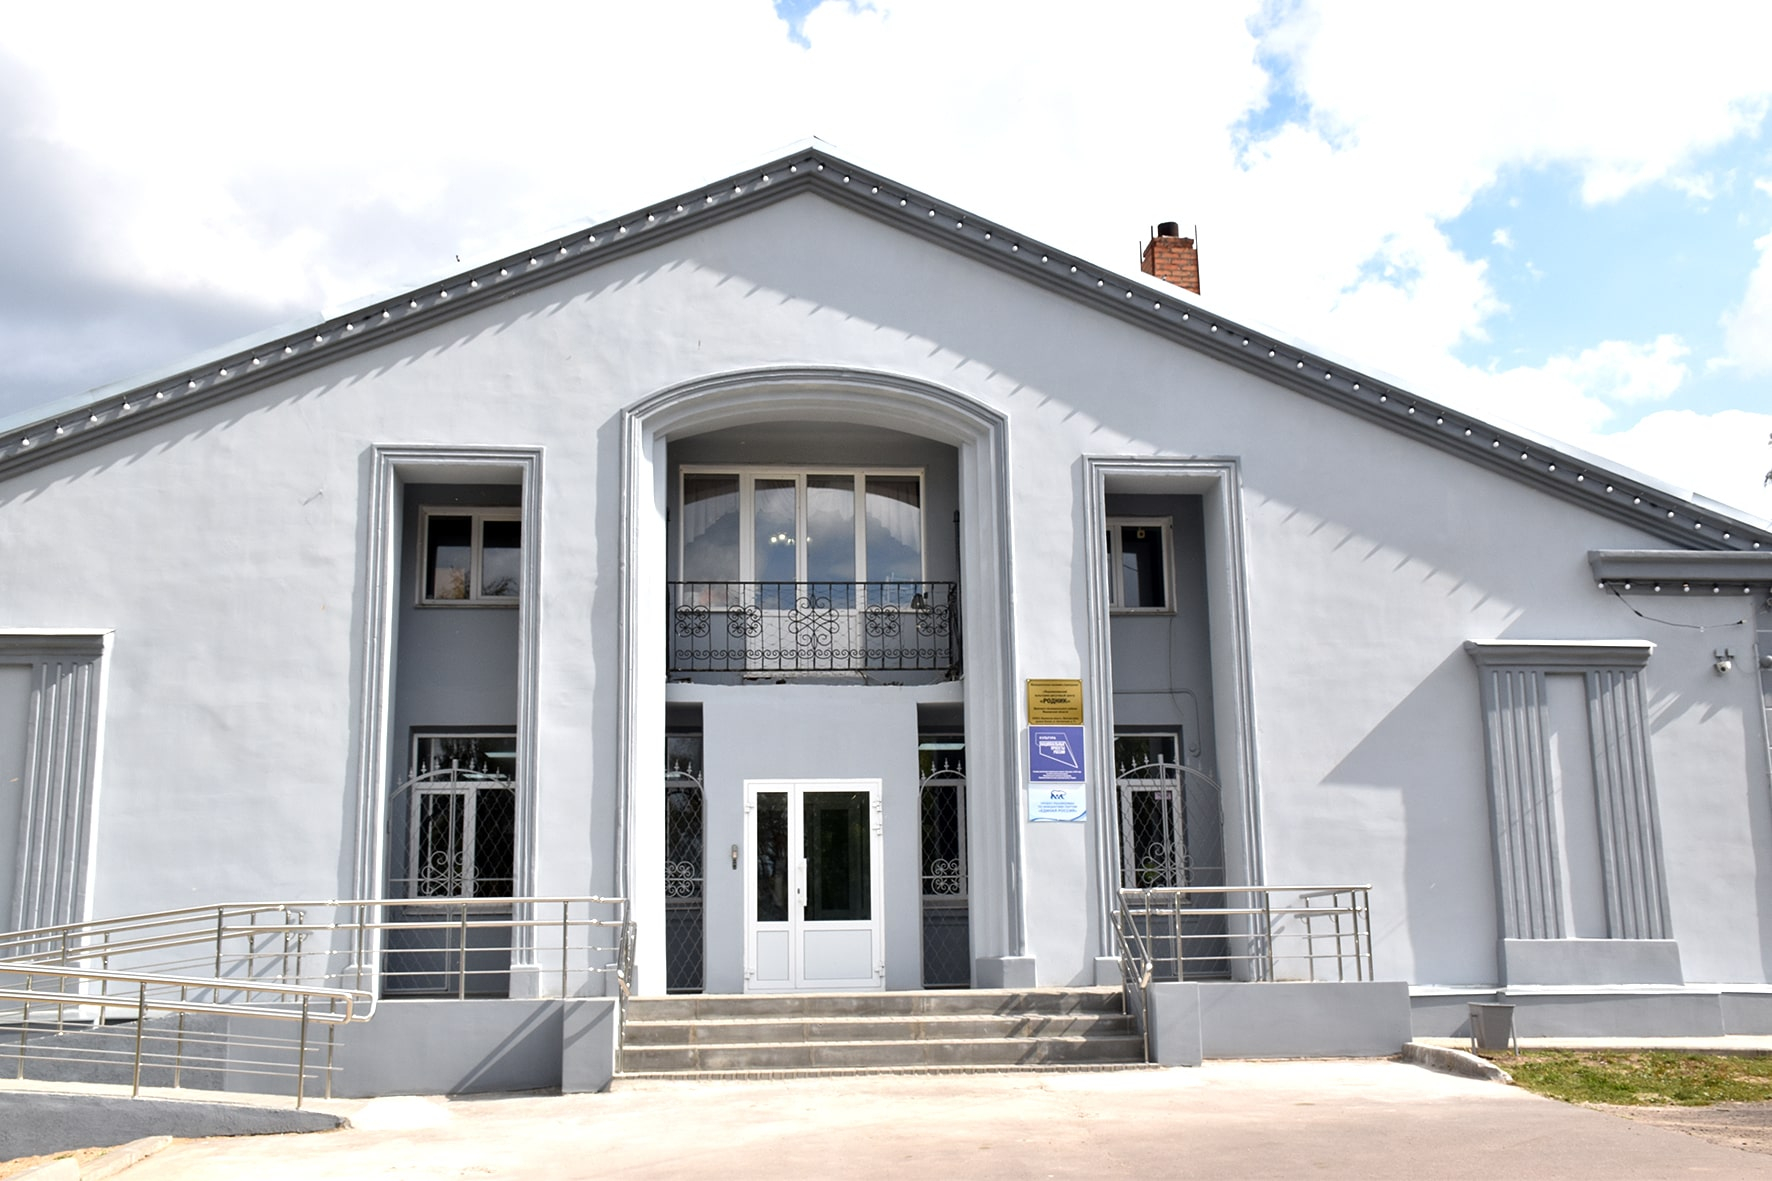 Дом культуры открыл двери после капитального ремонта